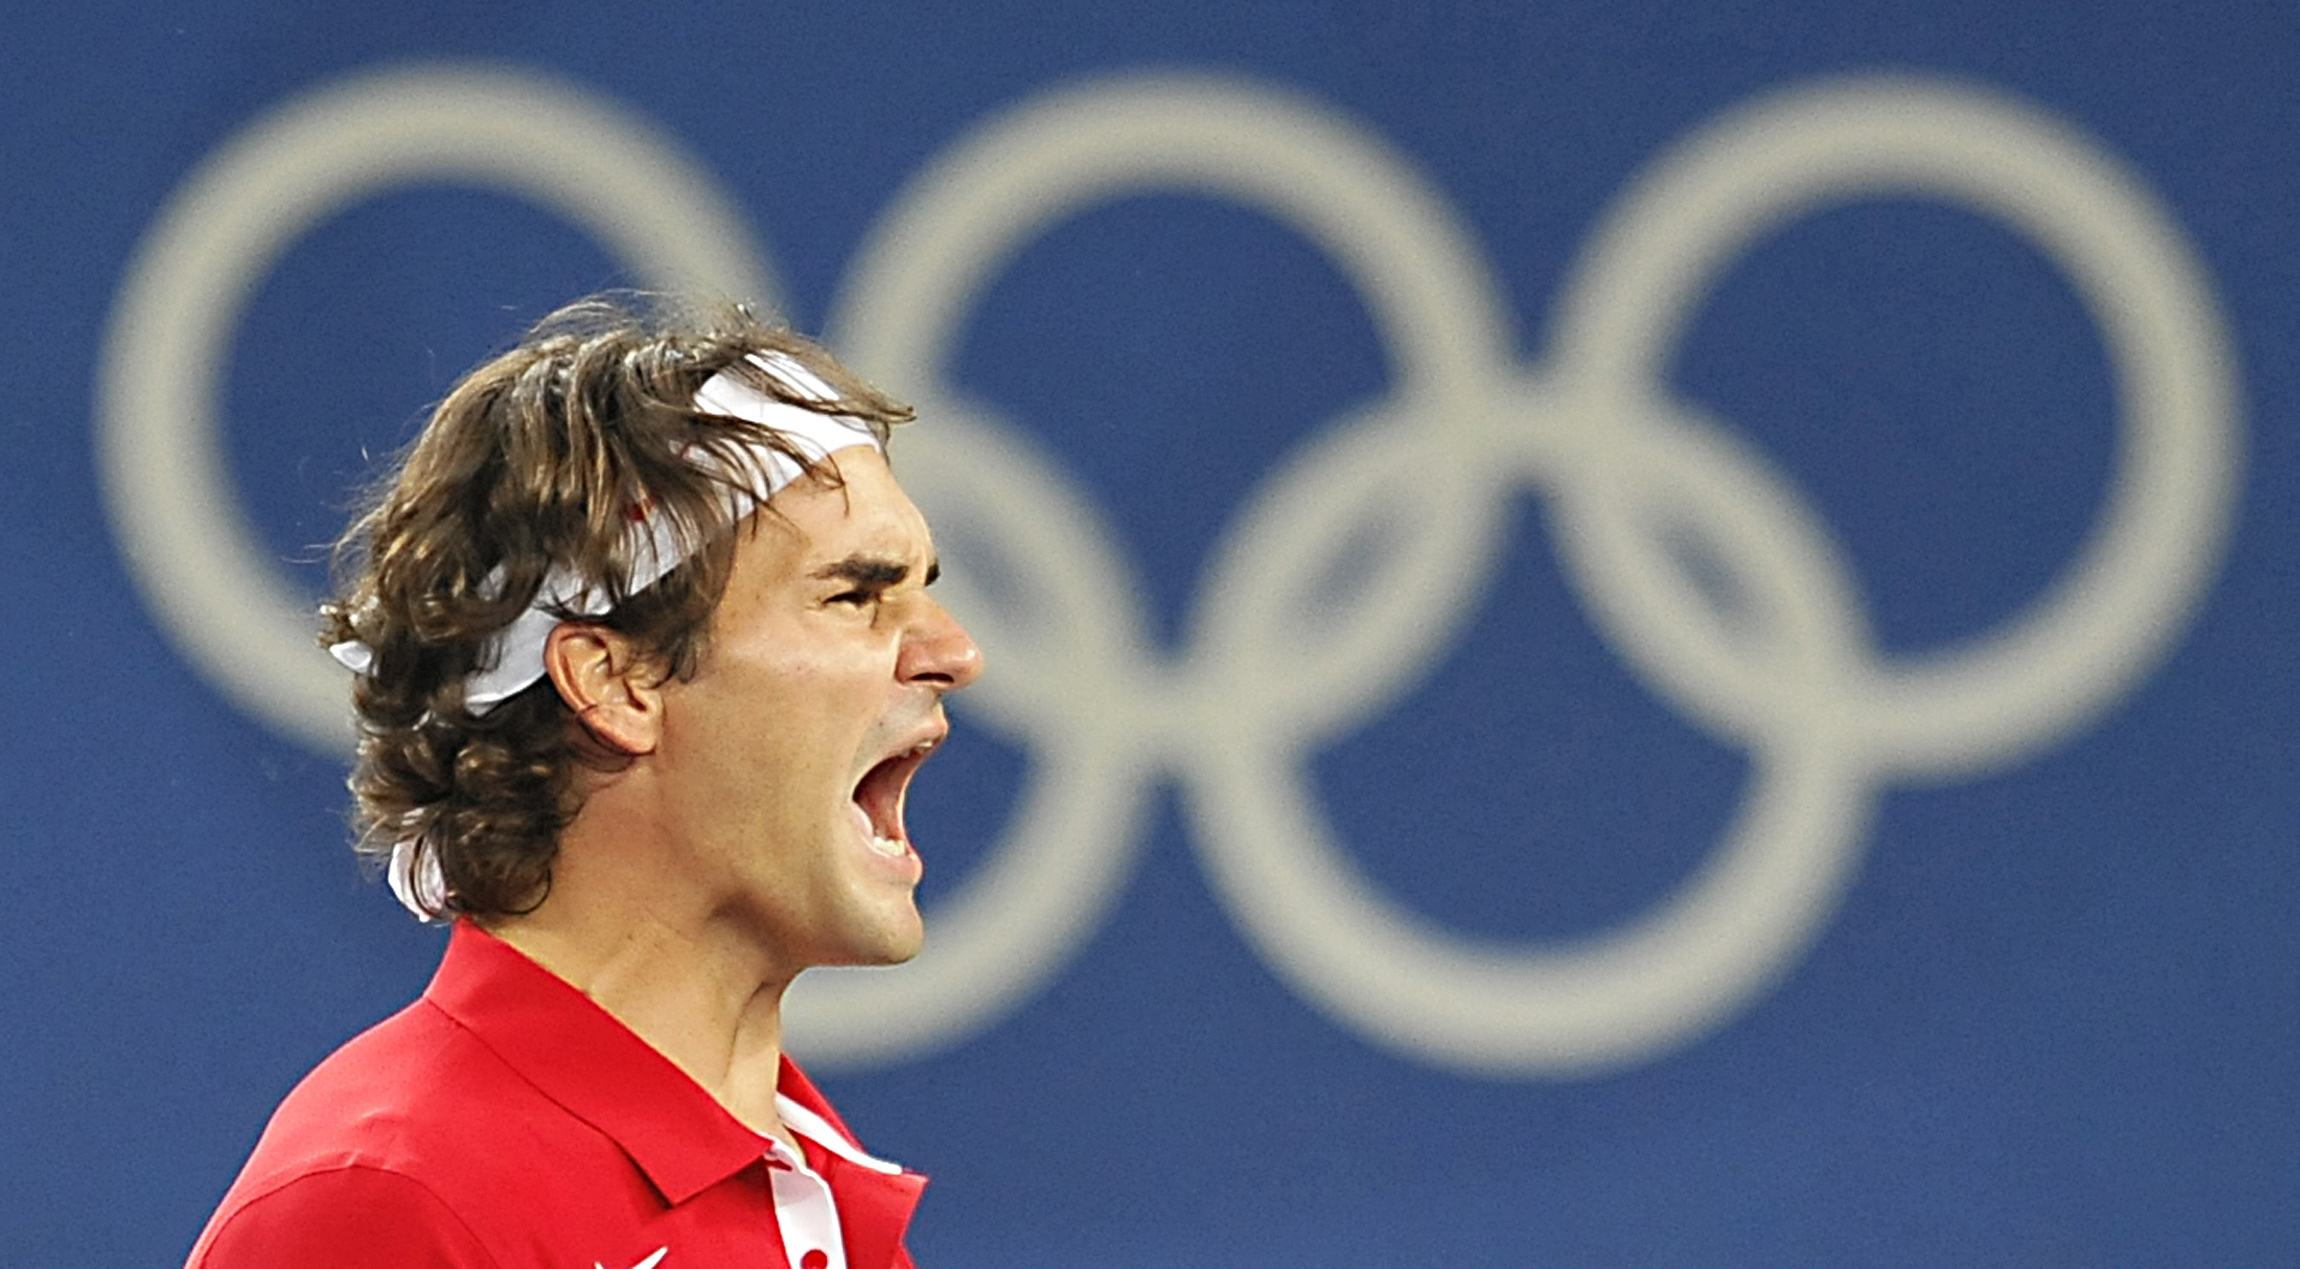 El tenista suizo, Roger Federer confirmó que no participará en los Juegos Olímpicos de Tokio. Una medalla de oro en individual es su asignatura pendiente. Foto Prensa Libre: AFP.